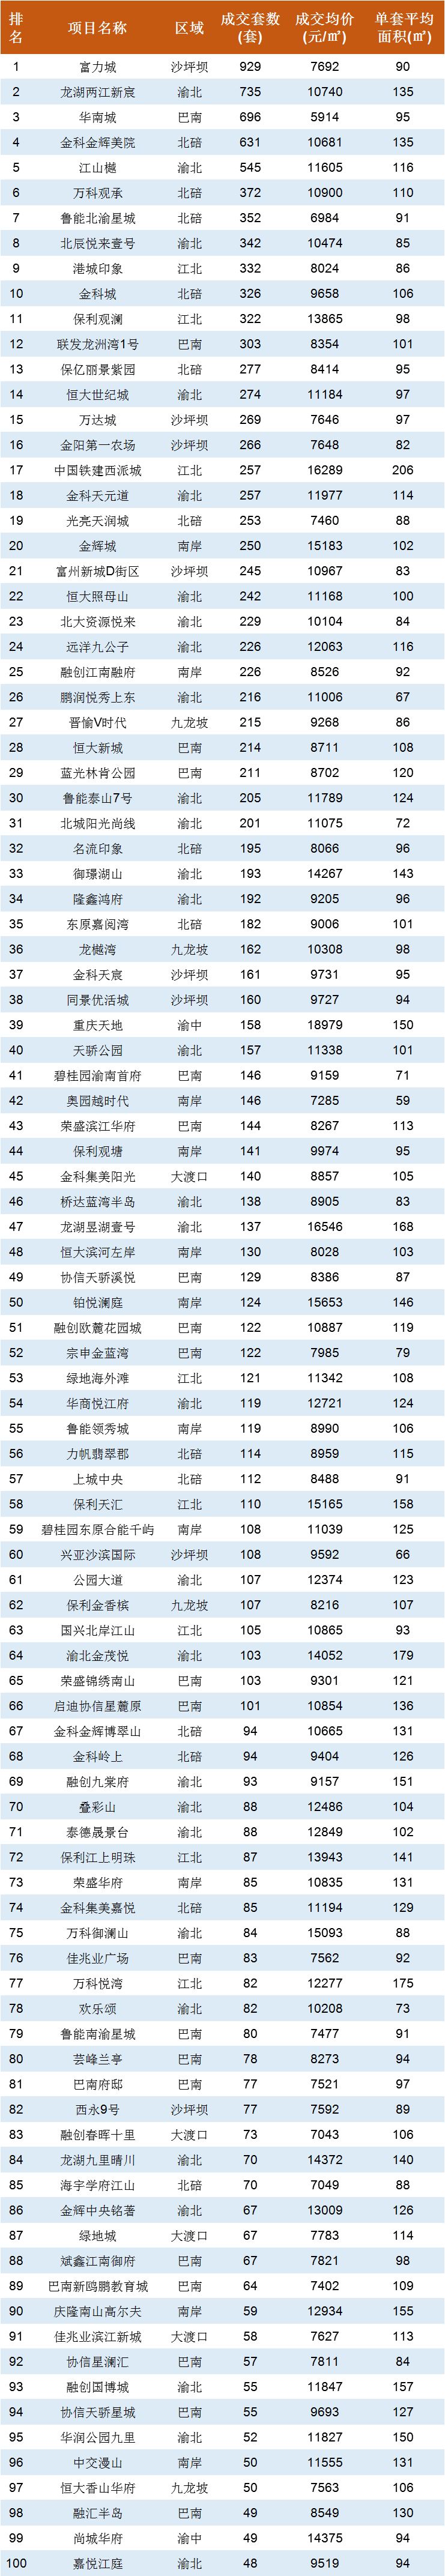 [数据]重庆新房及过去一个月新房排行榜